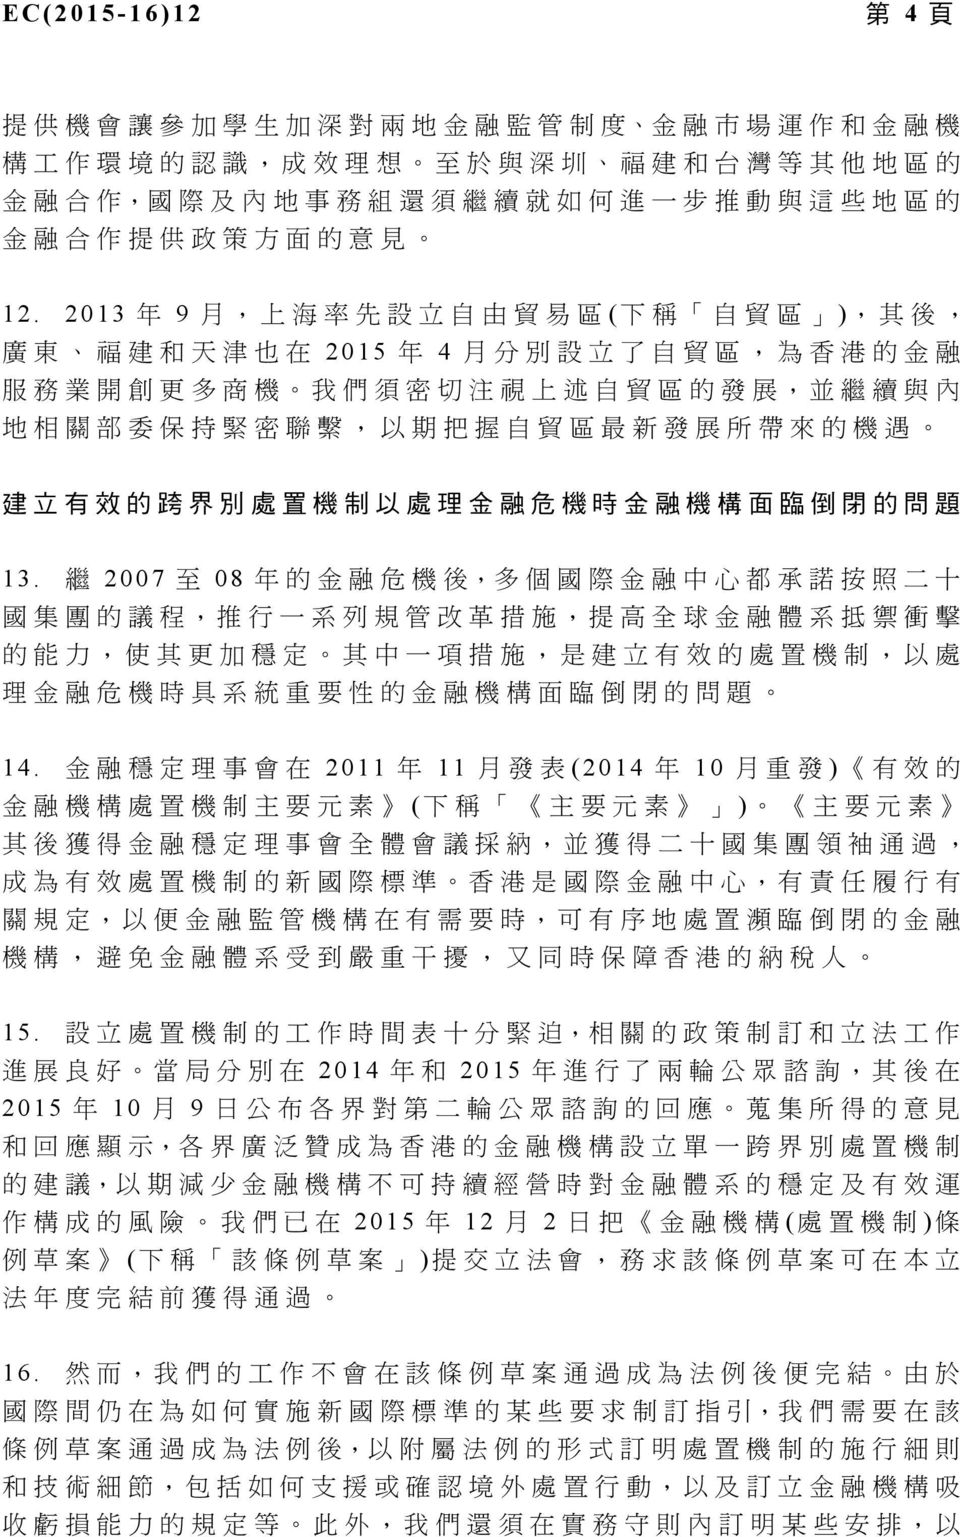 2013 年 9 月, 上 海 率 先 設 立 自 由 貿 易 區 ( 下 稱 自 貿 區 ), 其 後, 廣 東 福 建 和 天 津 也 在 2015 年 4 月 分 別 設 立 了 自 貿 區, 為 香 港 的 金 融 服 務 業 開 創 更 多 商 機 我 們 須 密 切 注 視 上 述 自 貿 區 的 發 展, 並 繼 續 與 內 地 相 關 部 委 保 持 緊 密 聯 繫, 以 期 把